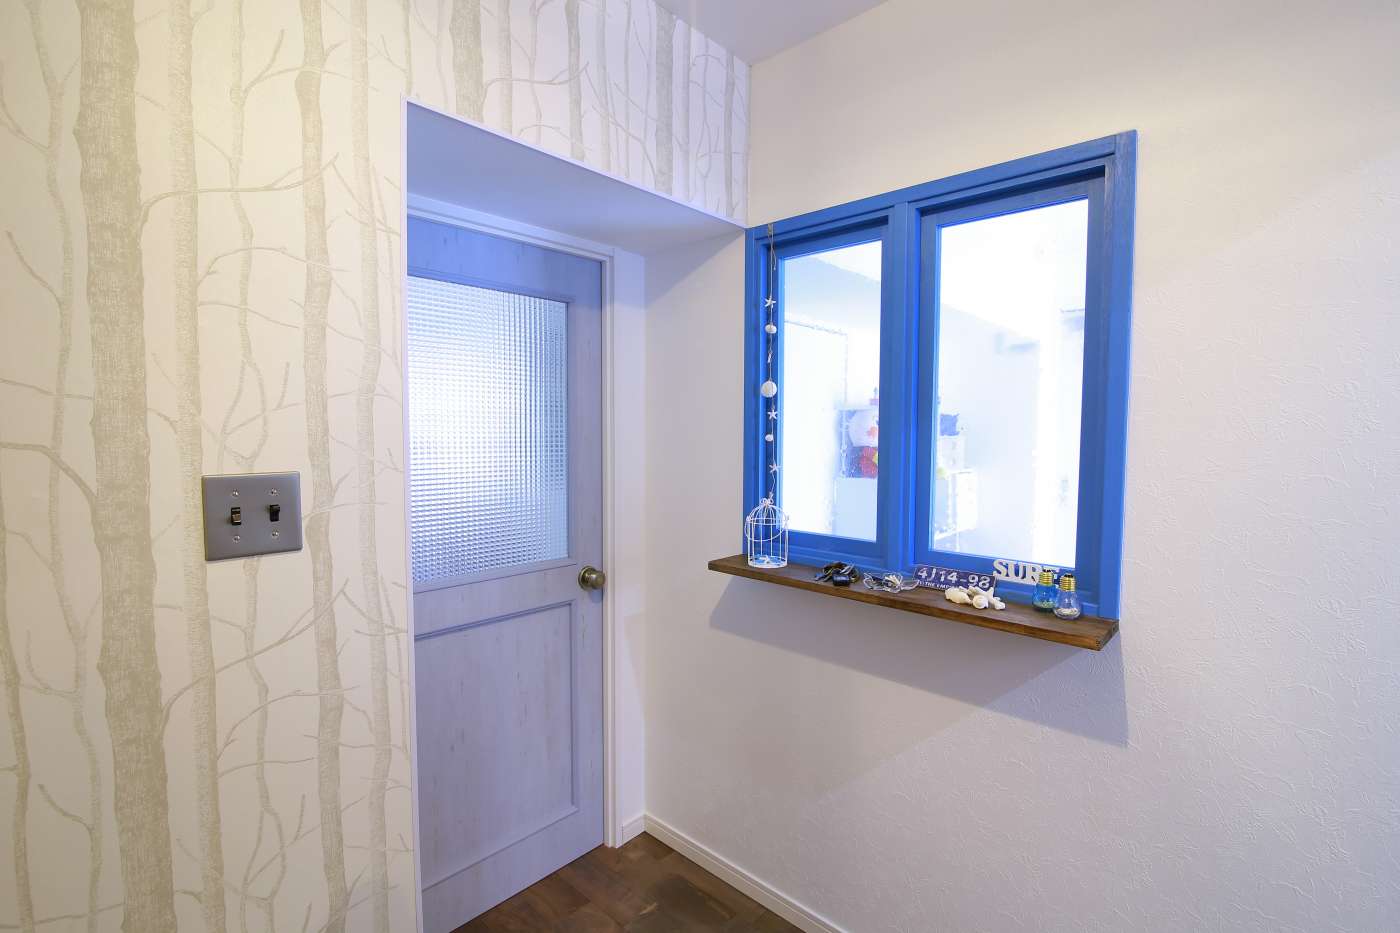 ウッド調のドアと青い小窓で西海岸の雰囲気をアップ